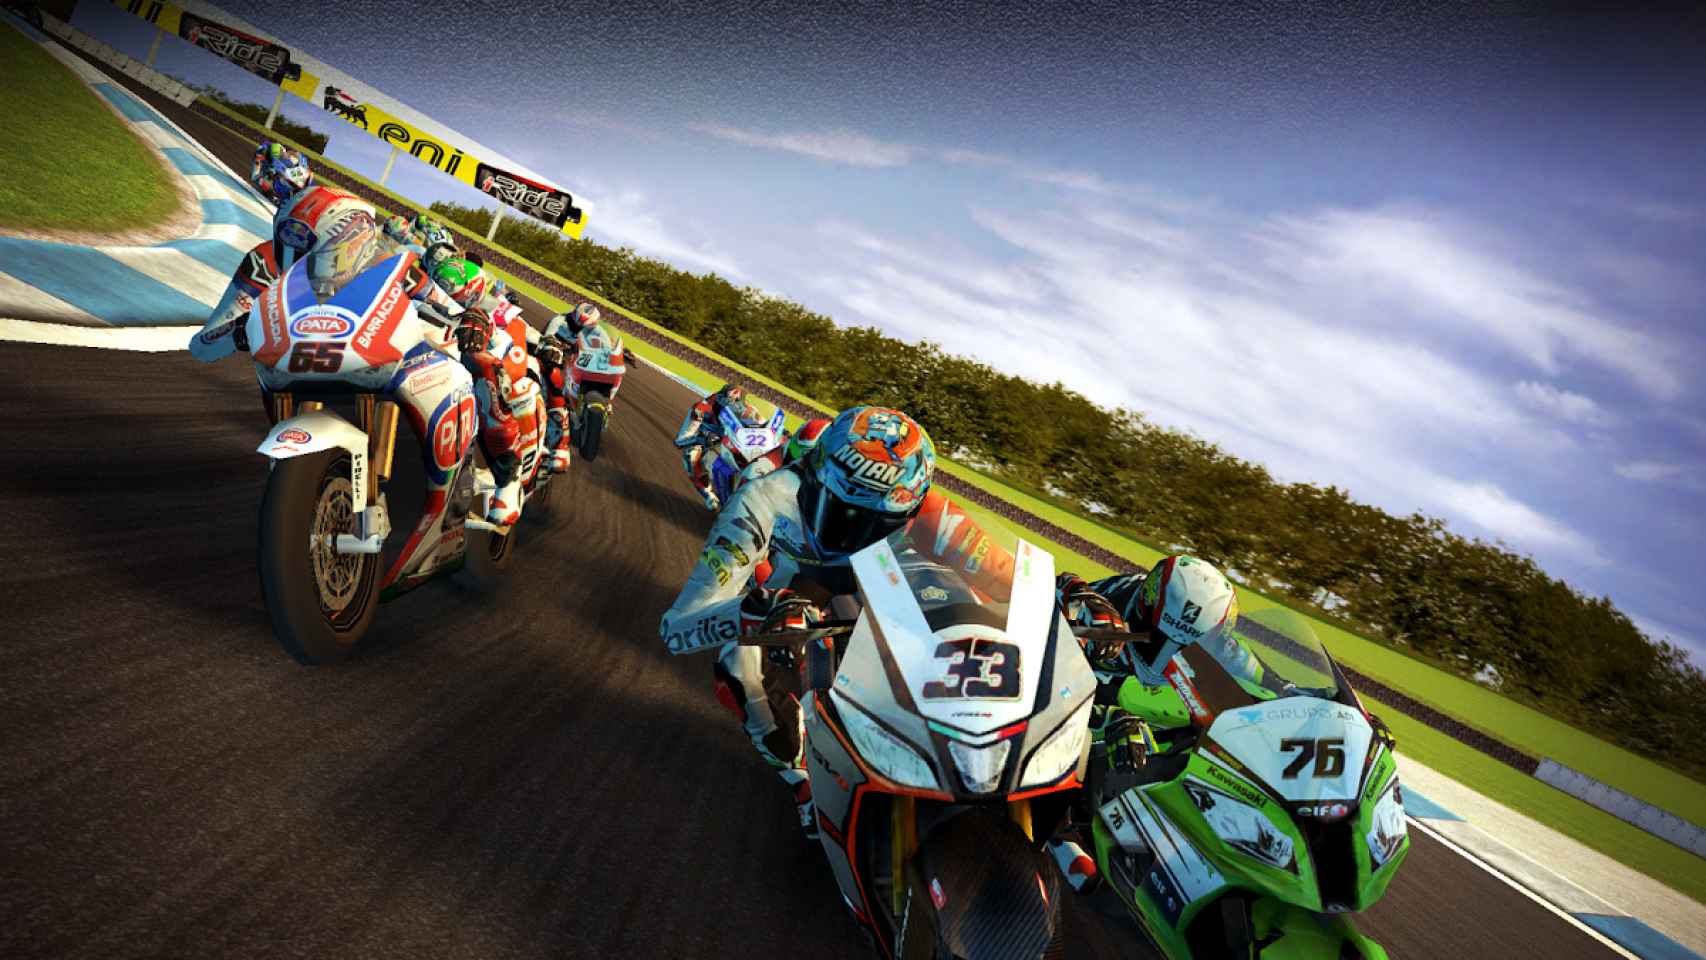 SBK14, el juego oficial del mundial de Superbikes